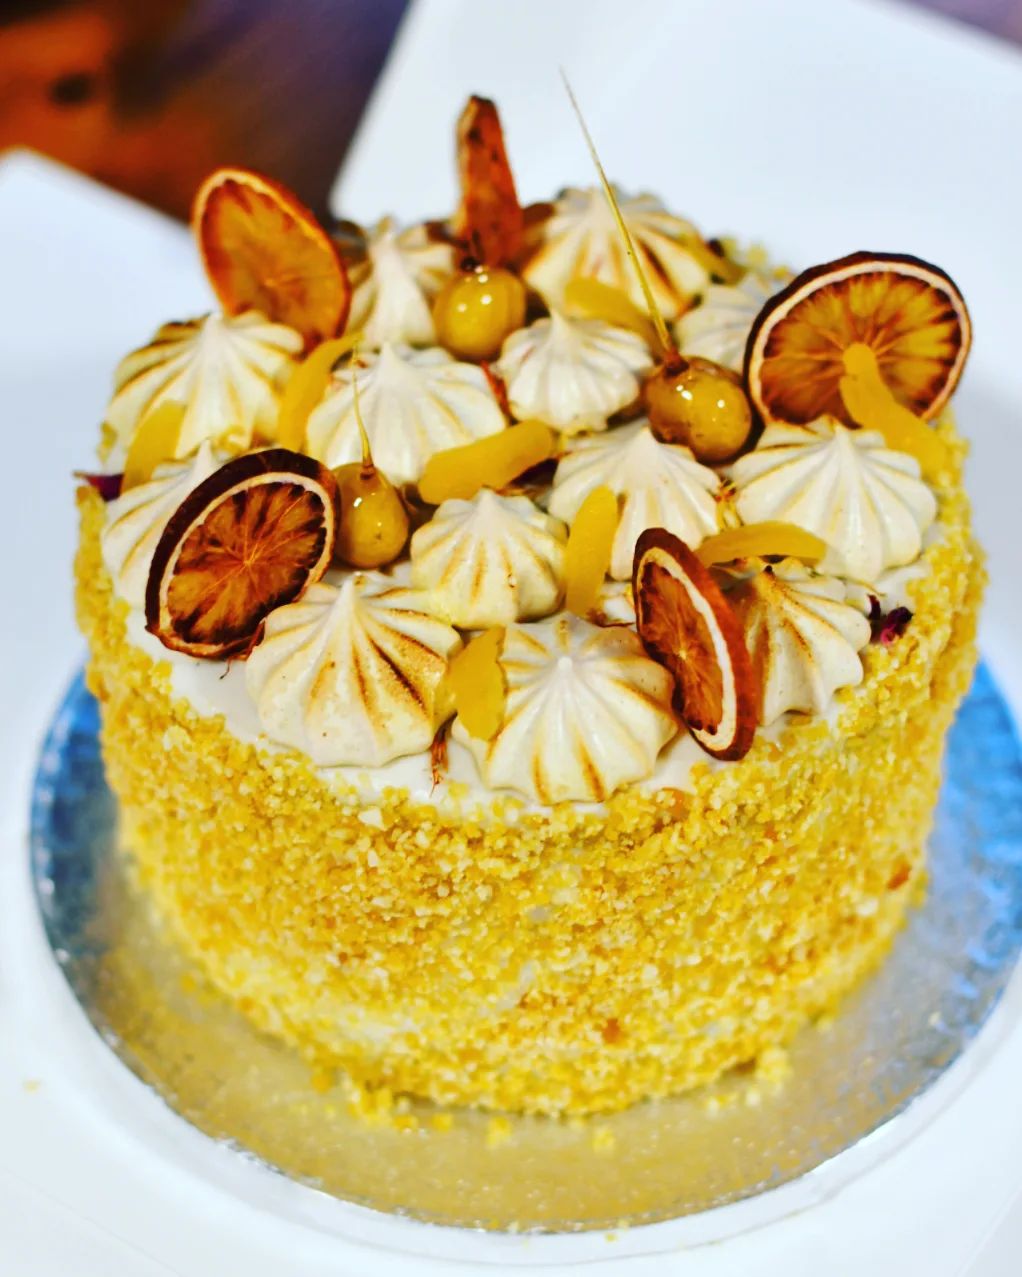 🎃 Pumpkin spice cake met cashew cream frosting, op smaak gebracht met biologische mandarijntjes, en gedecoreerd met aquafaba citroen-kaneelschuimpjes en macadamia-nougatine 💚